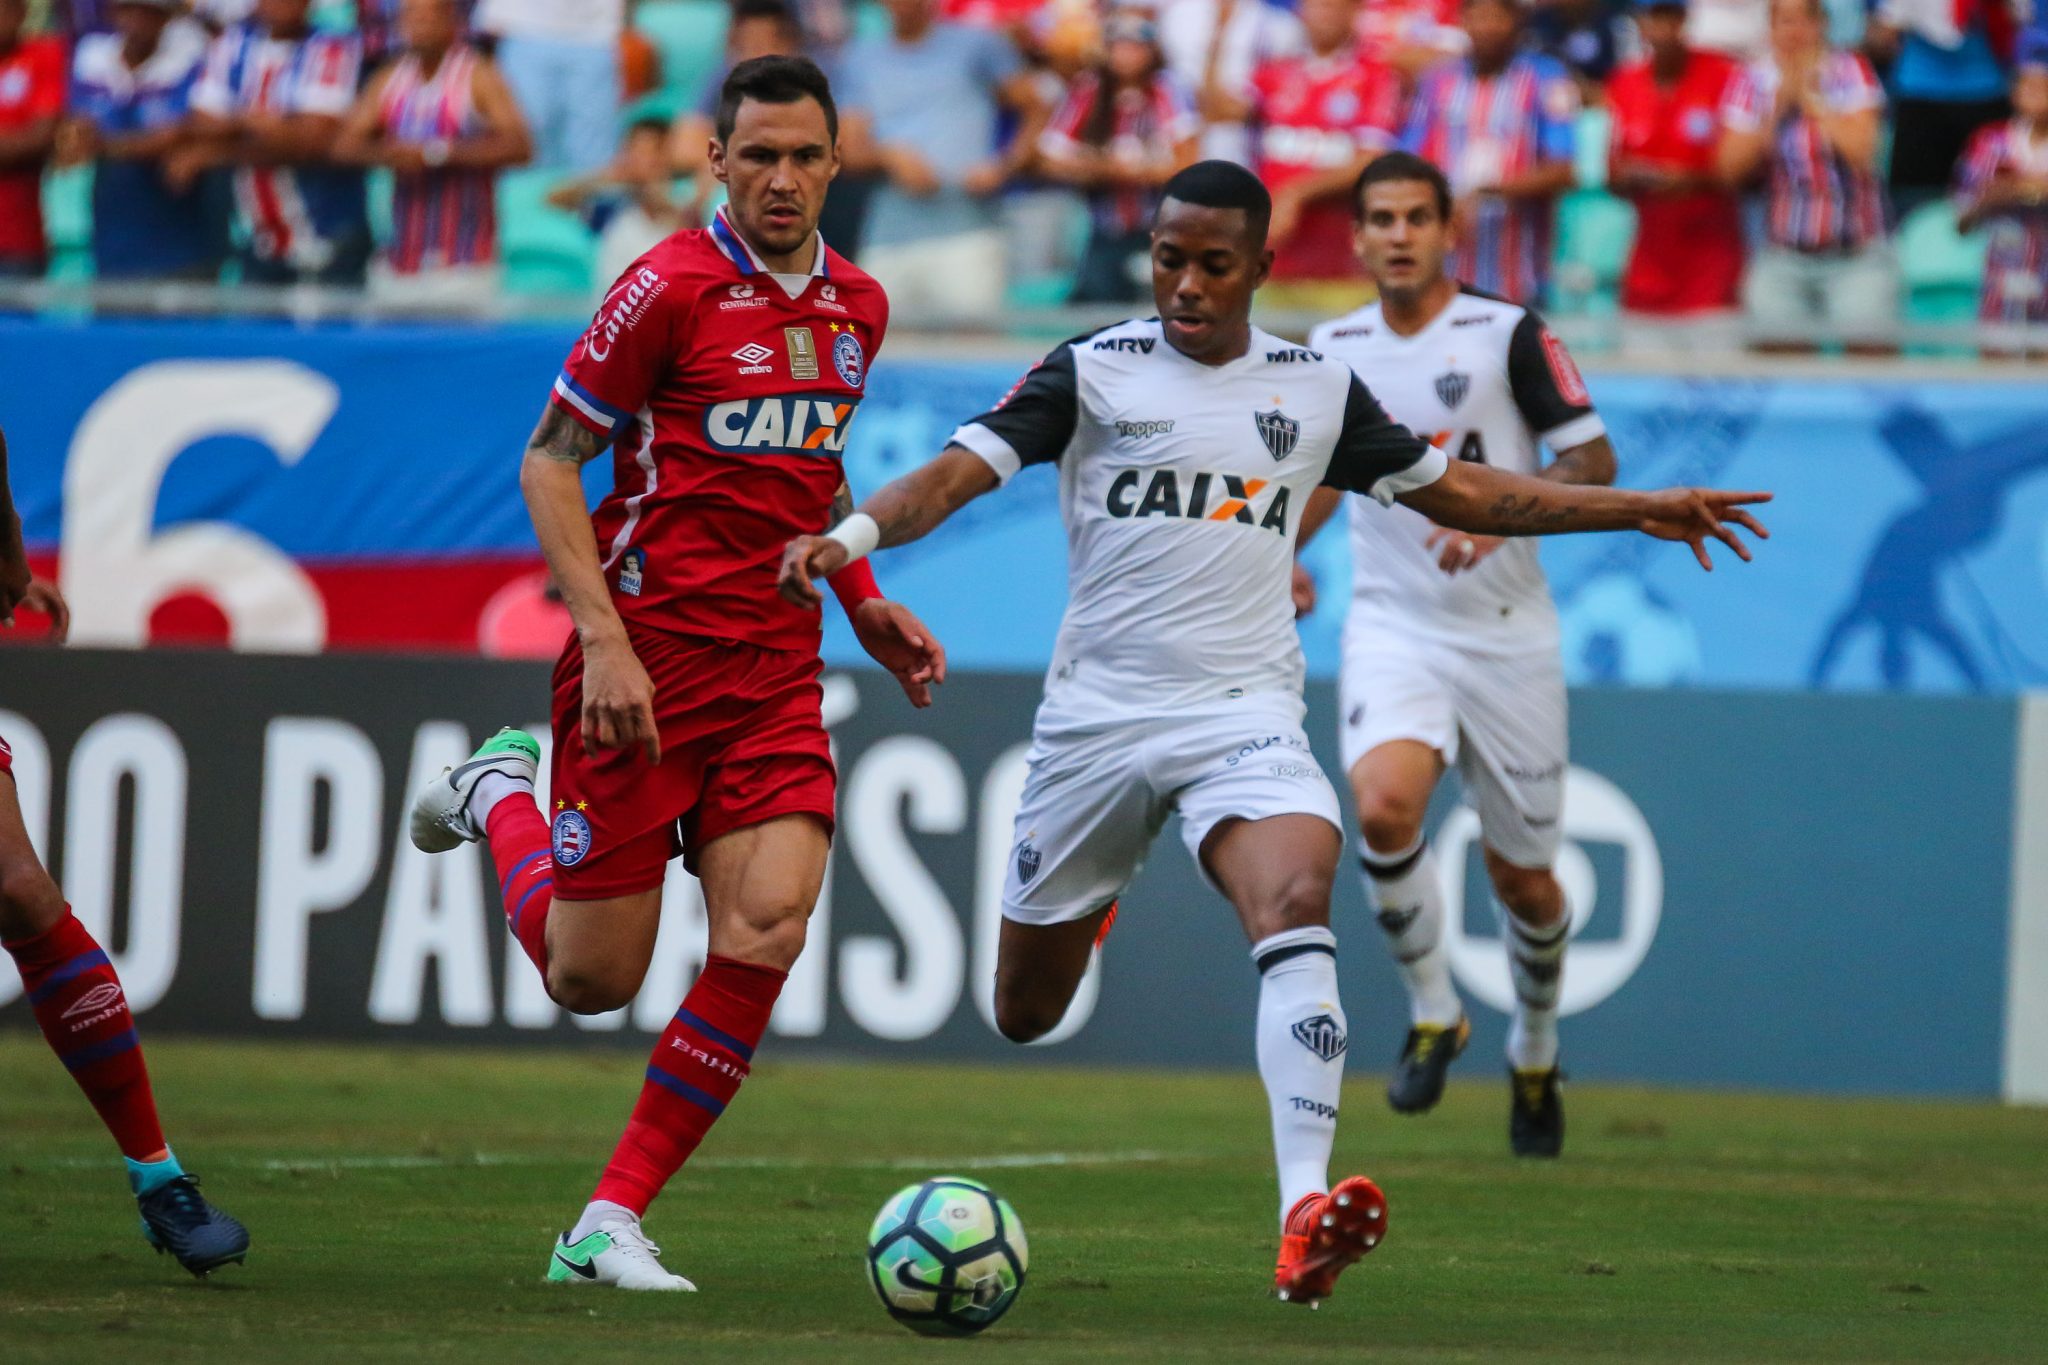 24498720818 35f57667b1 o - Bahia 2-2 Atlético - Robinho brilha, mas Galo só empata em Salvador